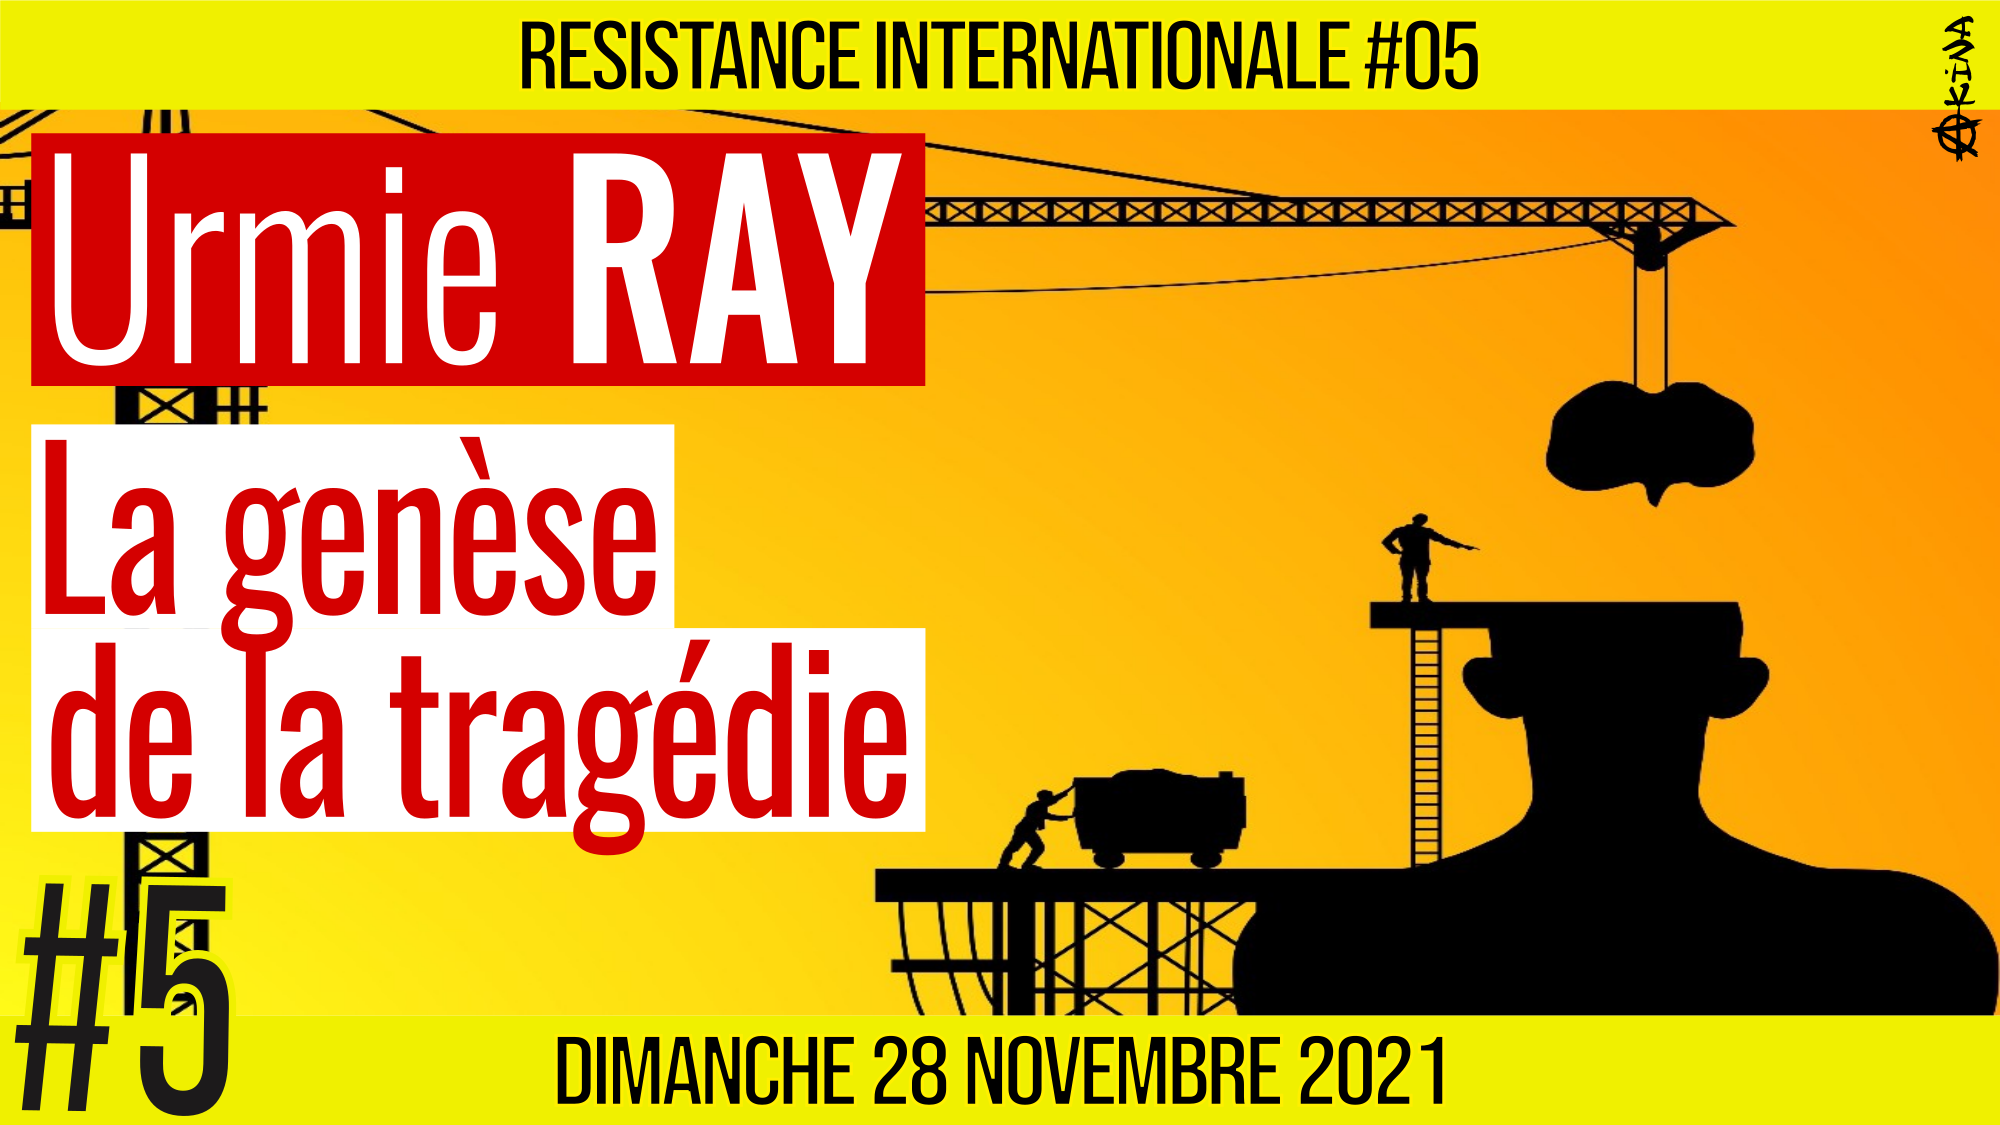 ✊ RÉSISTANCE INTERNATIONALE #05 🗣 Urmie RAY 🎯 La genèse de la tragédie : Partie 1/2 📆 28-11-2021